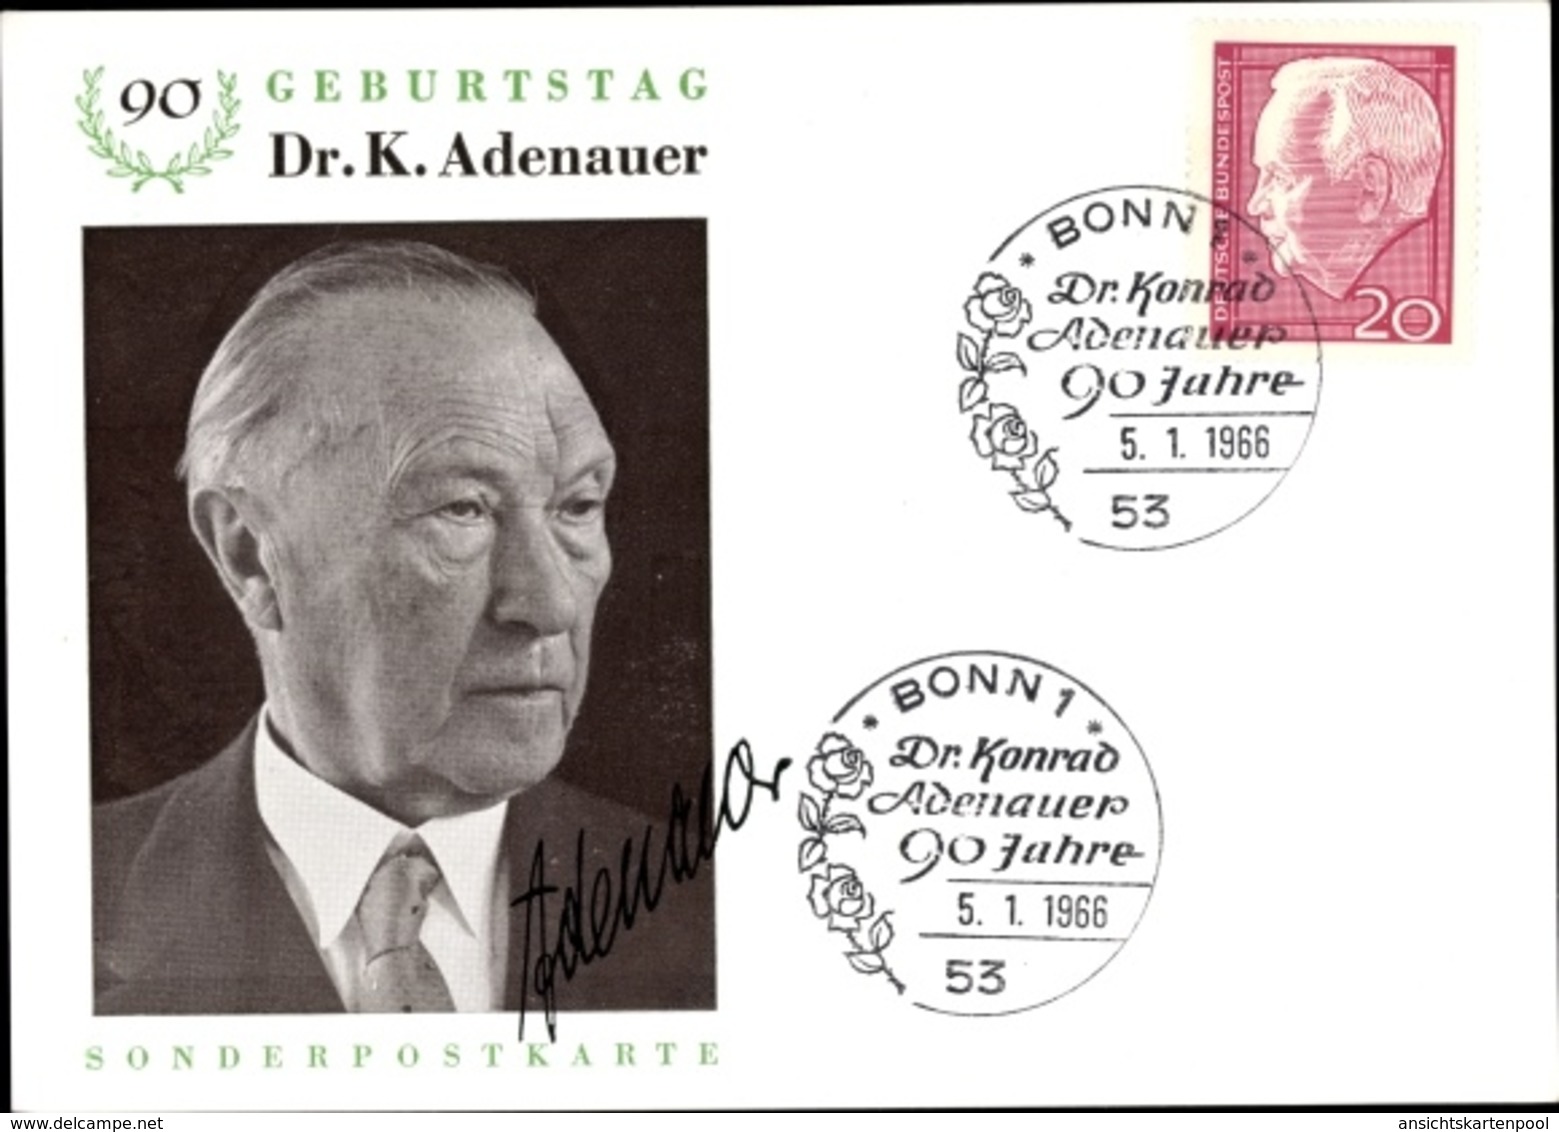 Cp Konrad Adenauer, Von 1949 Bis 1963 Erster Bundeskanzler Der BRD, 90 Geburtstag - Persönlichkeiten